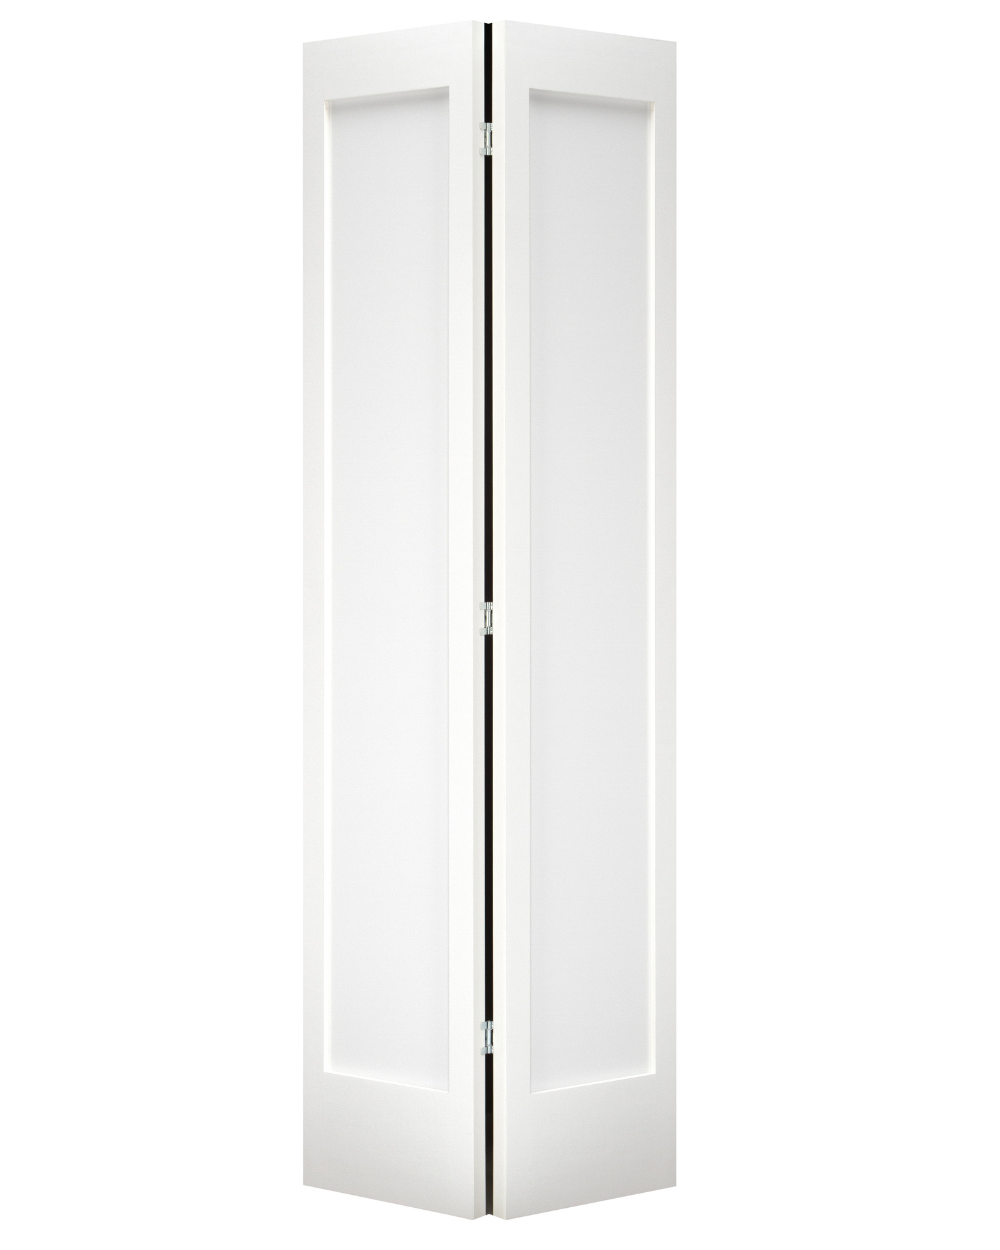 Single Panel Shaker Style Bifold Door (Primed)